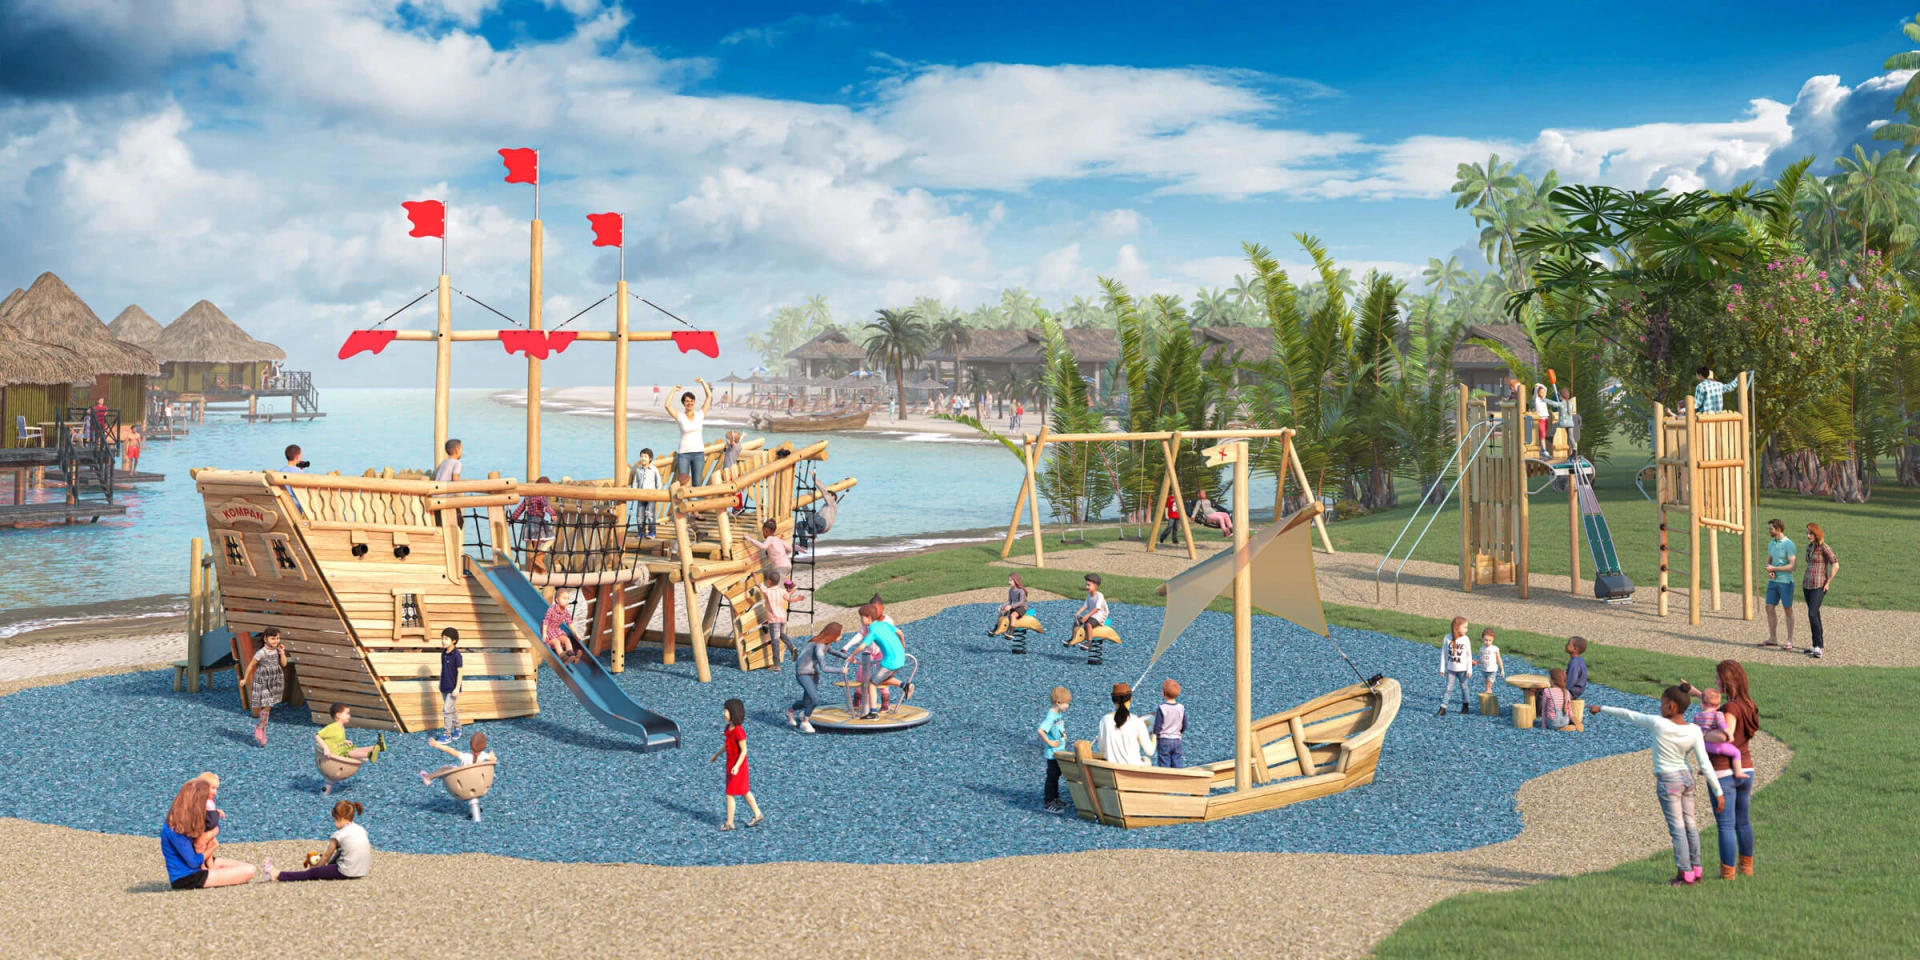 Design-Idee für Piraten-Holzspielplatz am Wasser